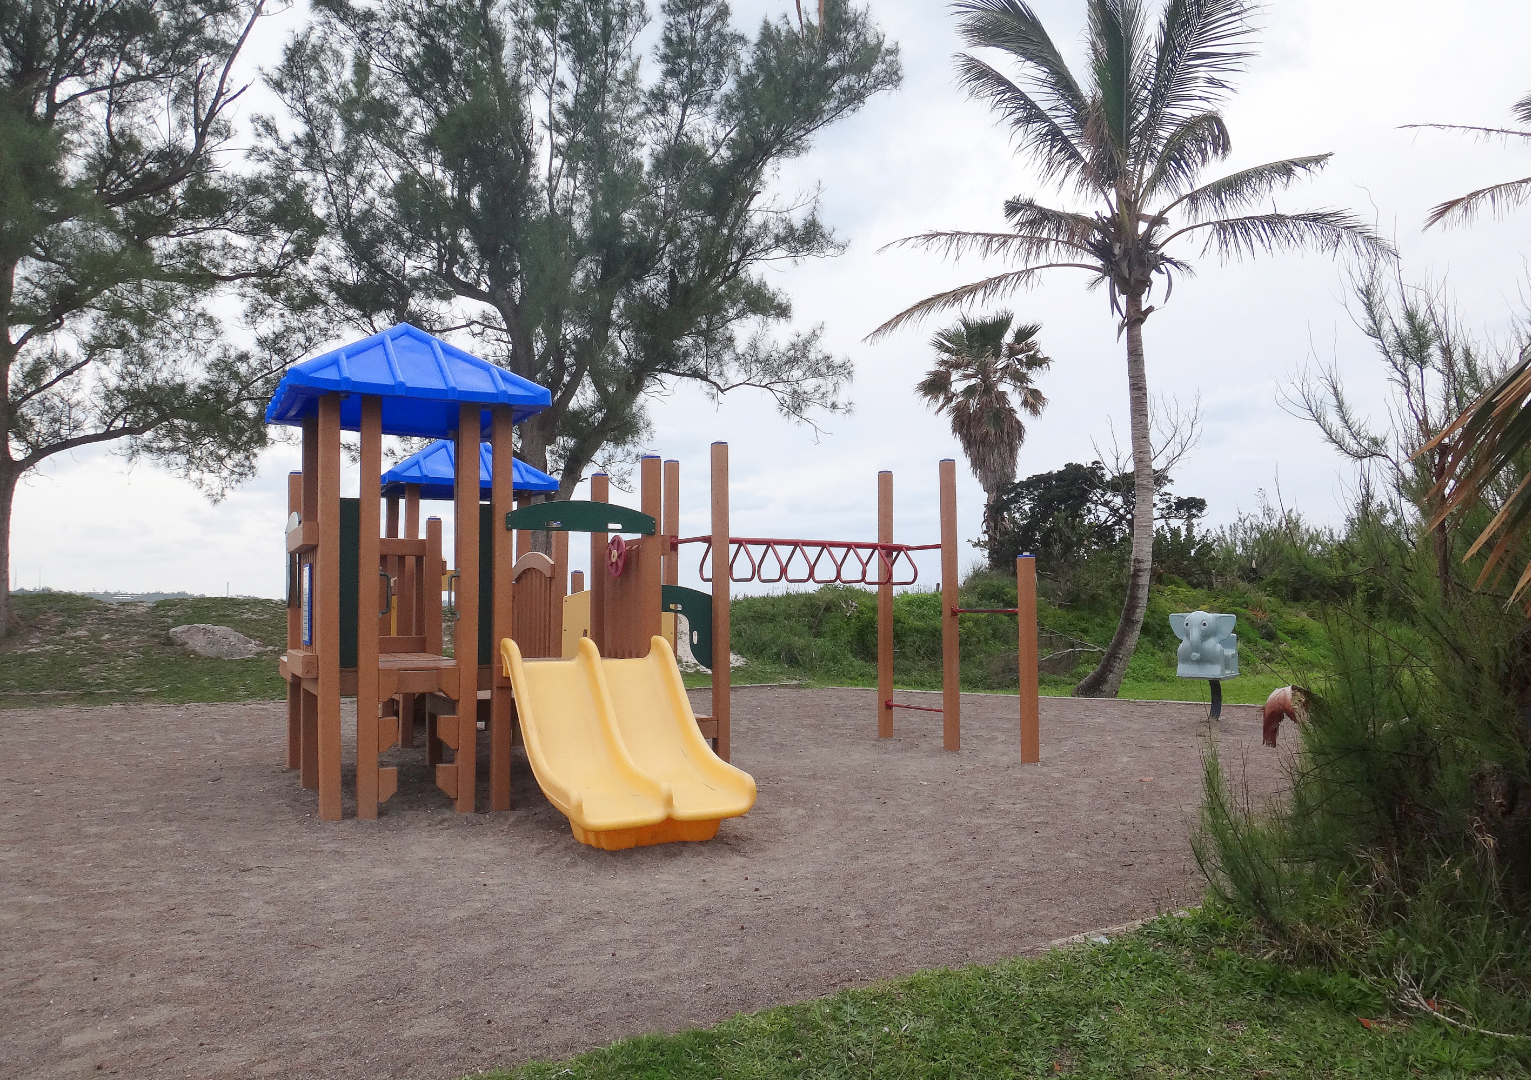 Shelly Bay Playground